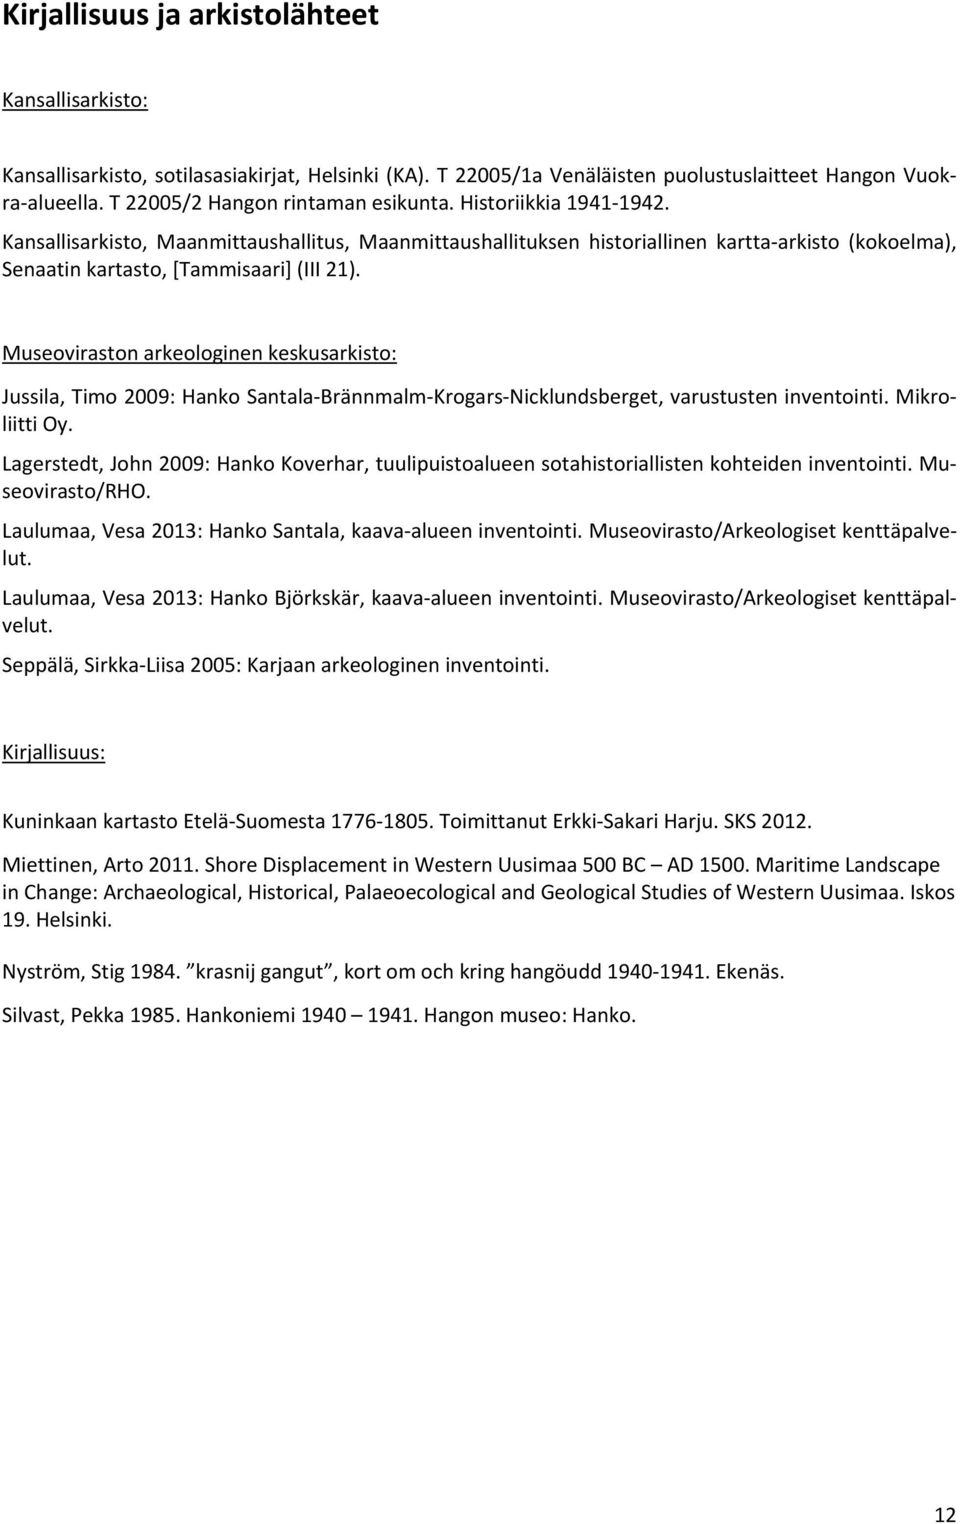 Kansallisarkisto, Maanmittaushallitus, Maanmittaushallituksen historiallinen kartta arkisto (kokoelma), Senaatin kartasto, [Tammisaari] (III 21).